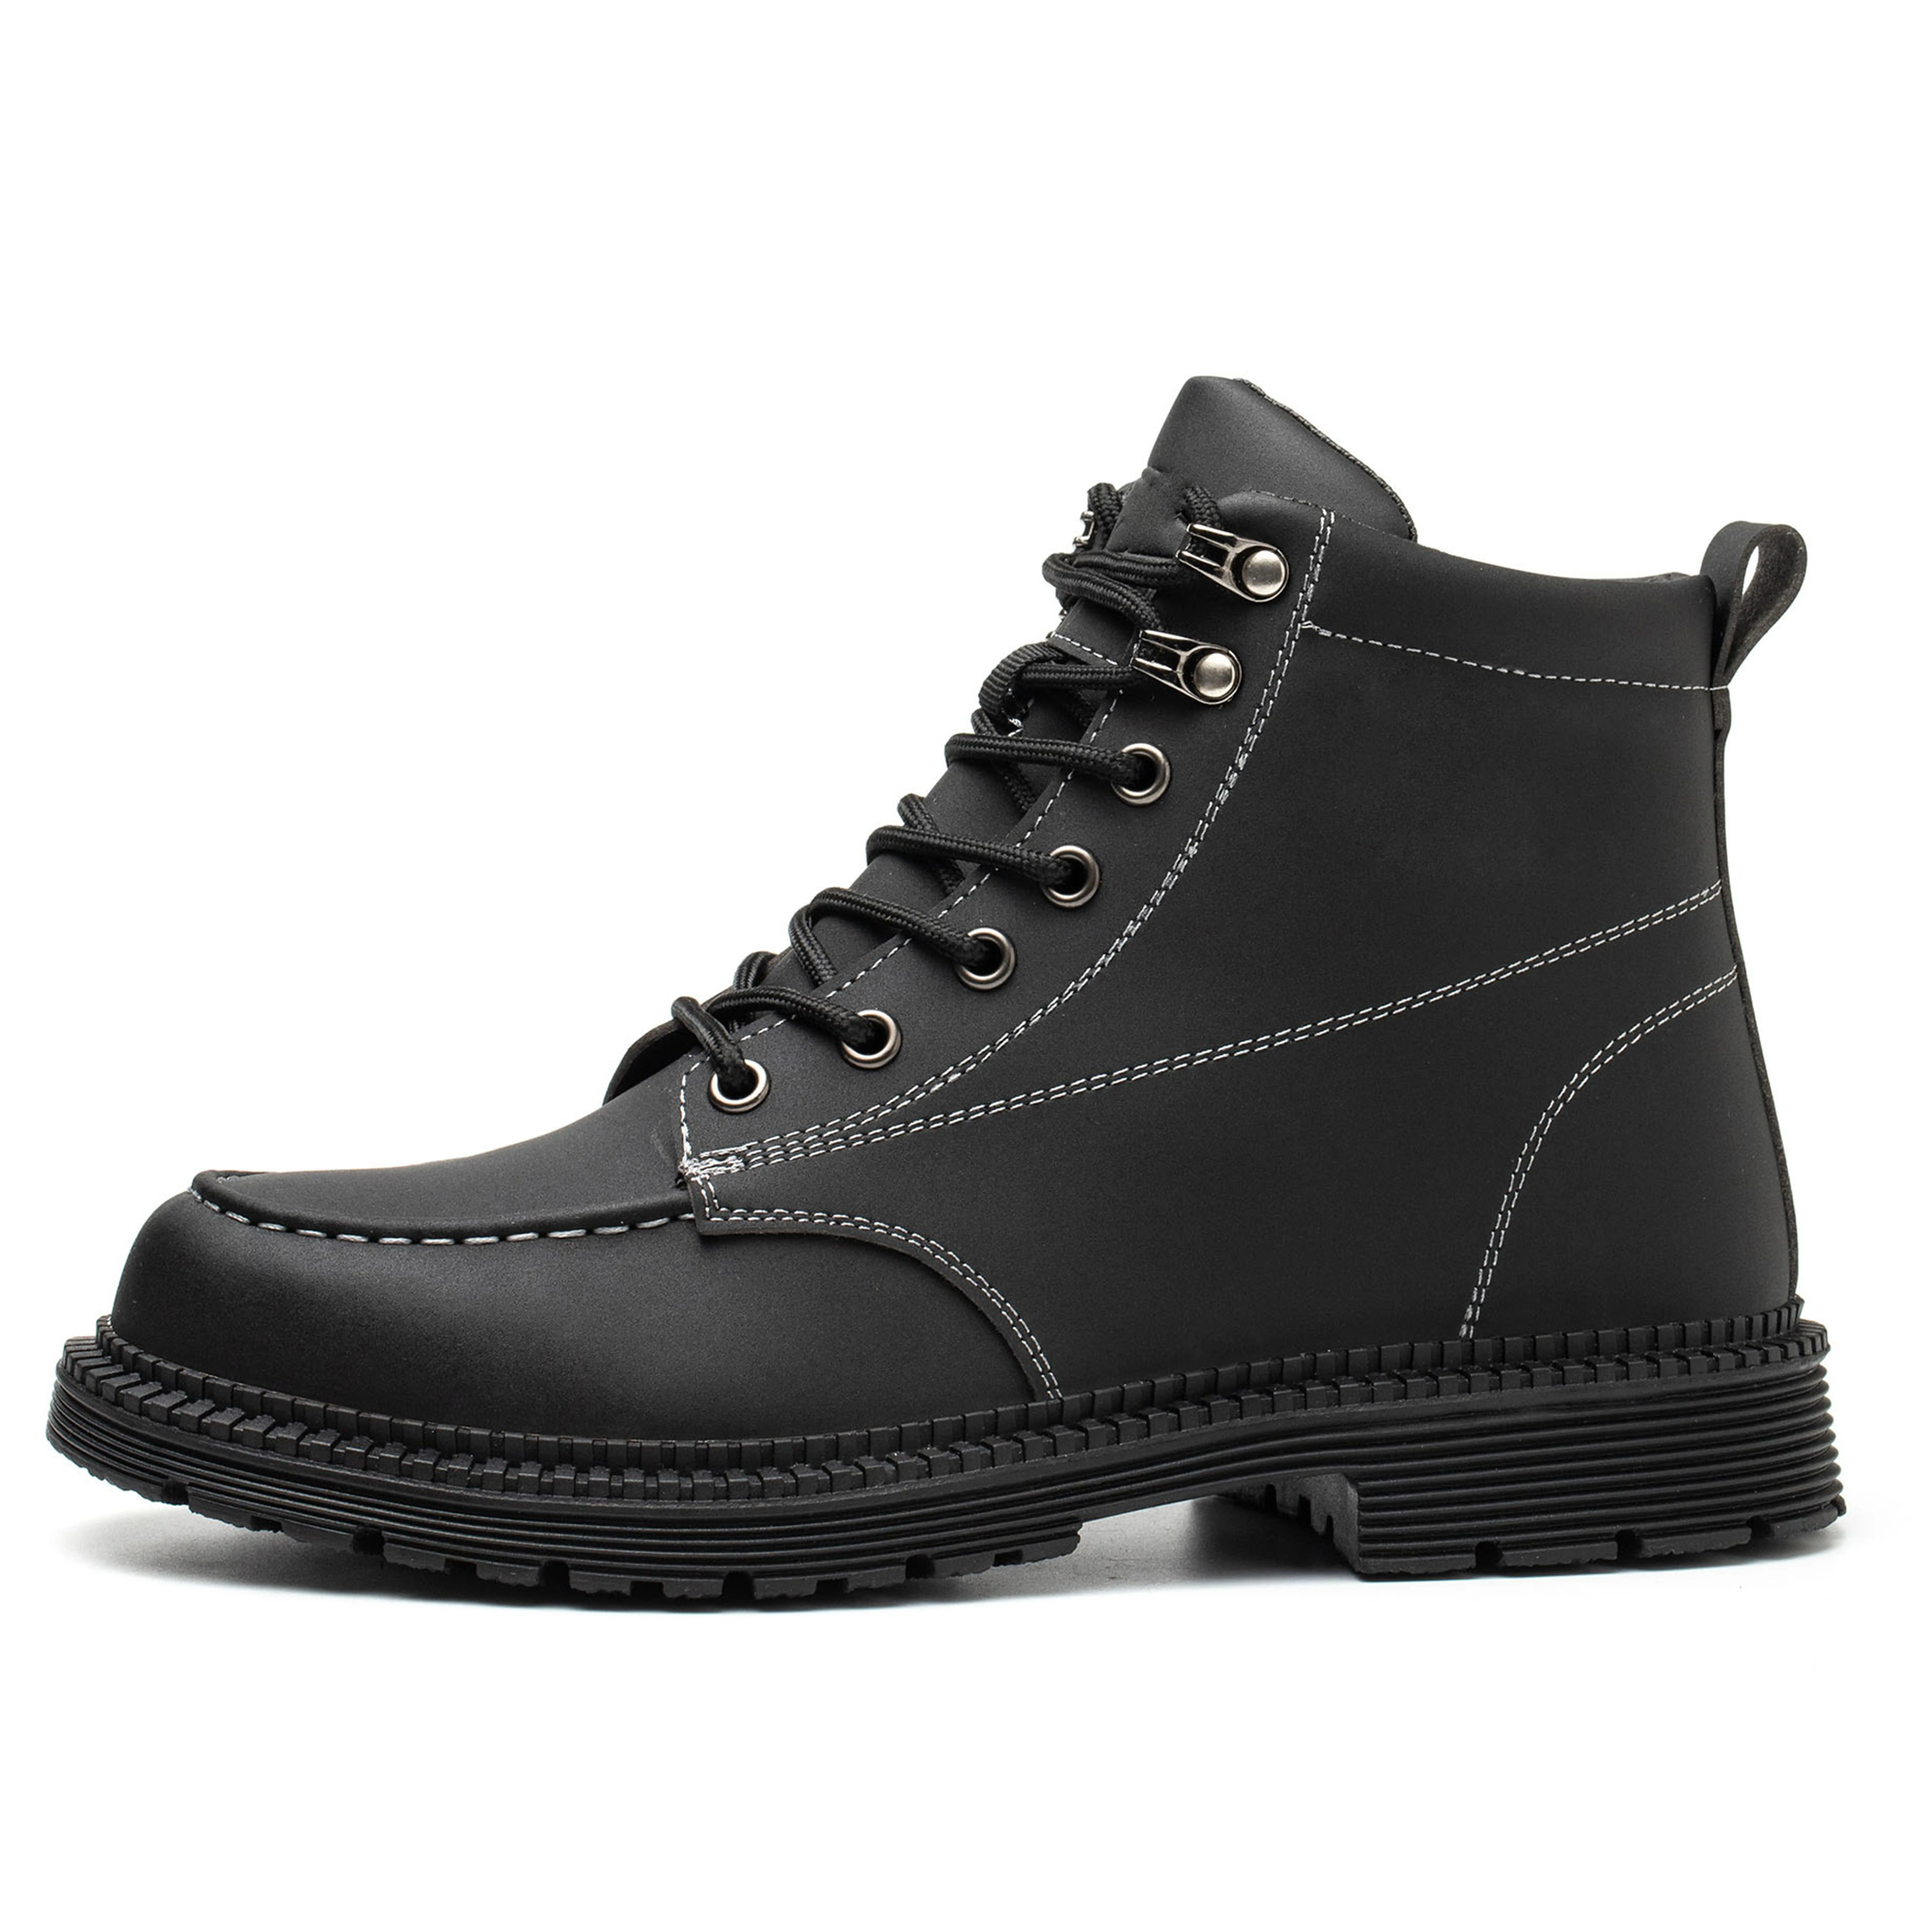 Zapatos de seguridad punta de acero protección hombres zapatos de trabajo moda